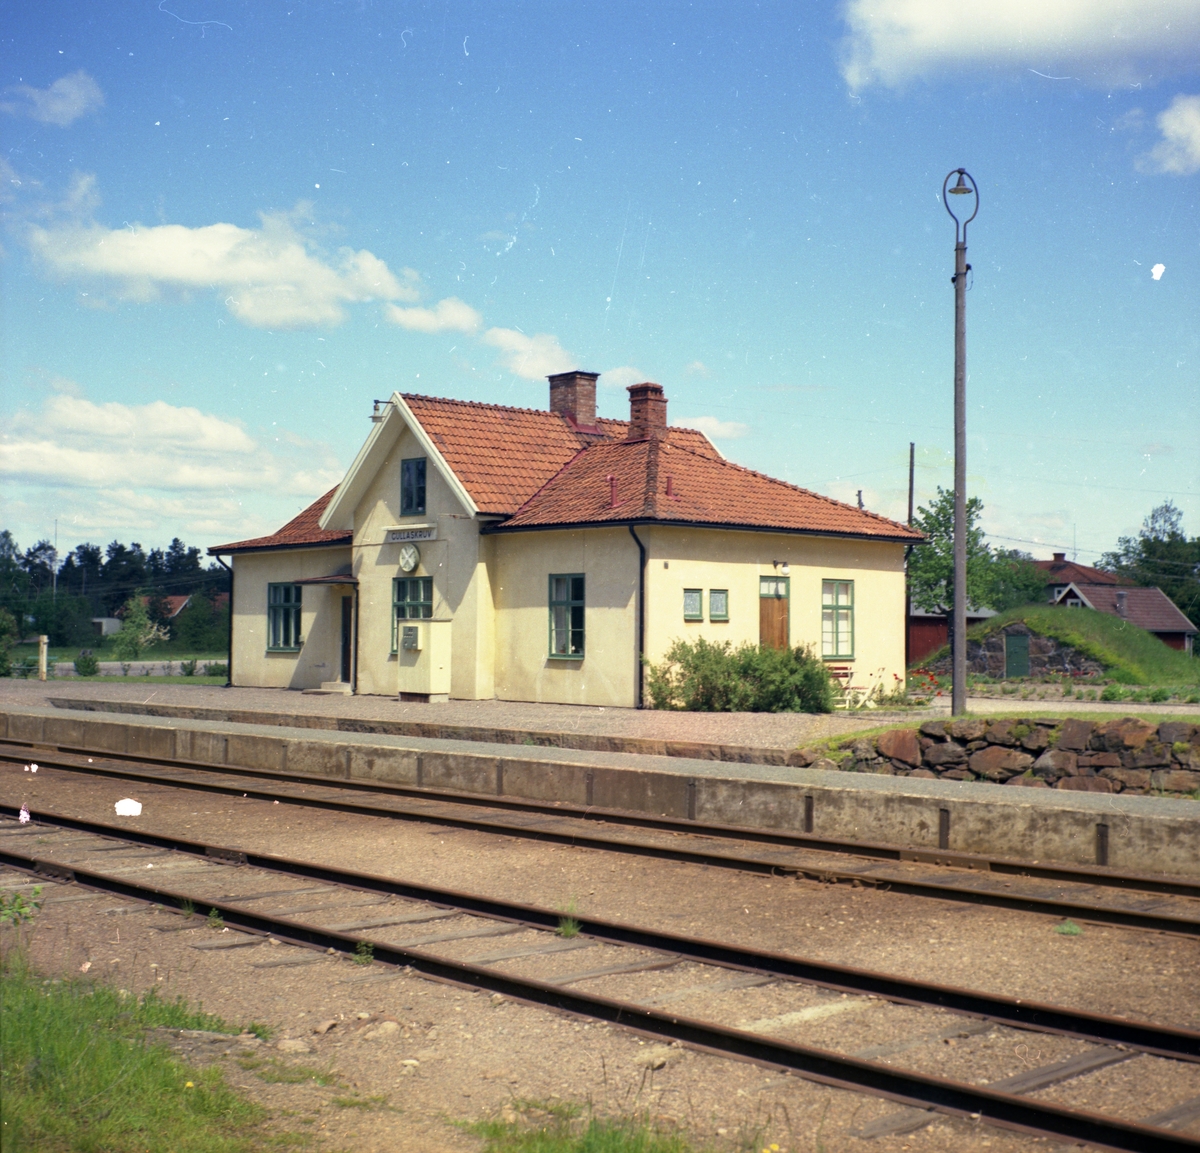 Gullaskruv station.